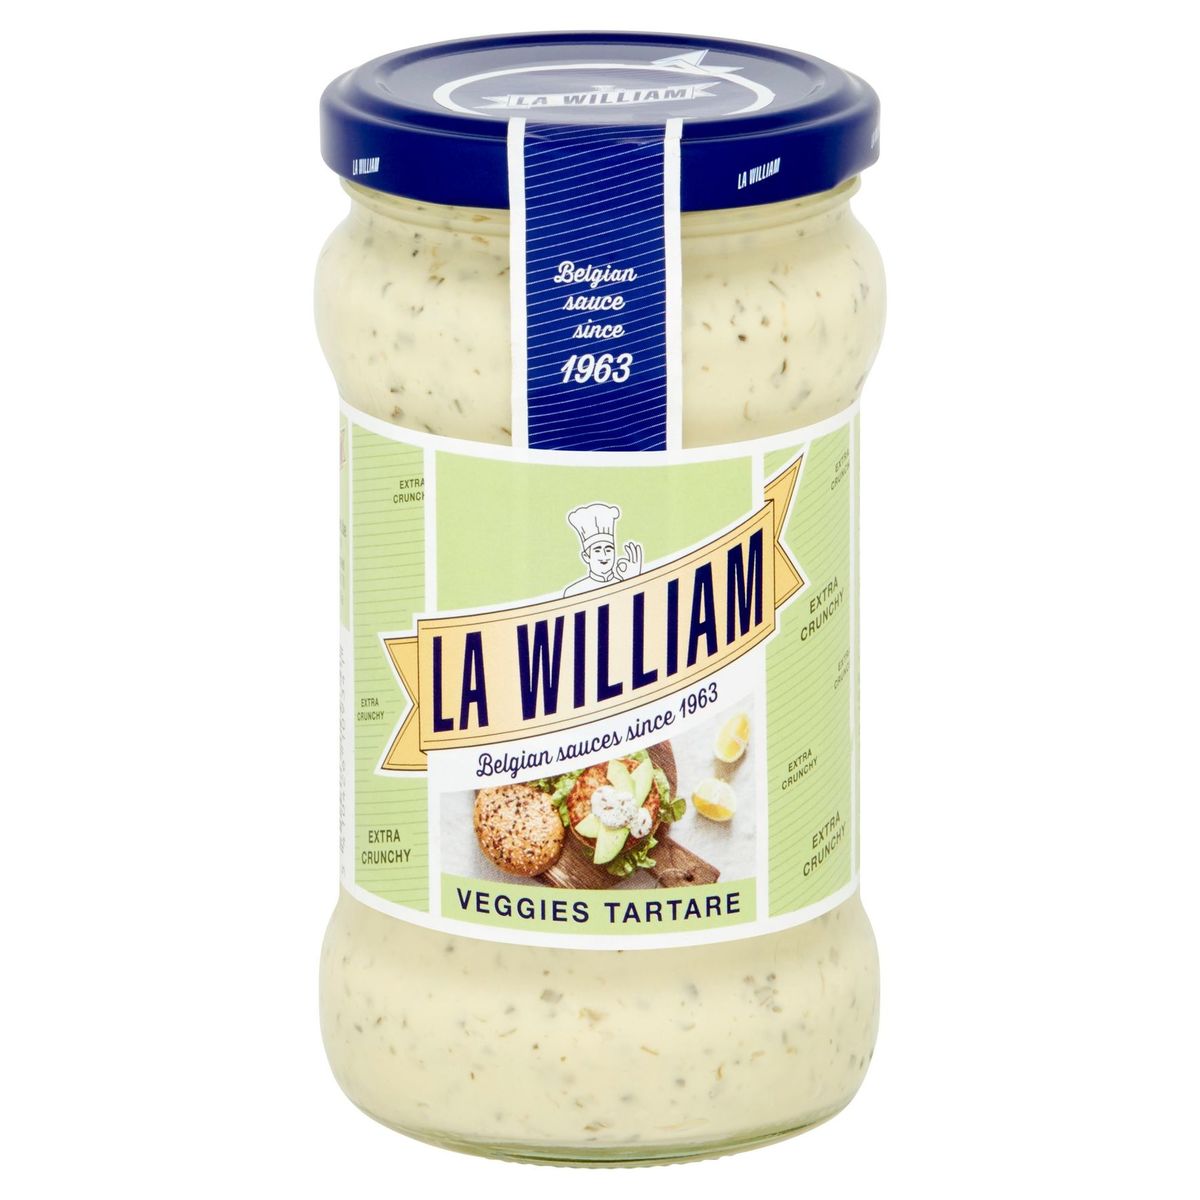 La William Veggies Tartare 300 ml